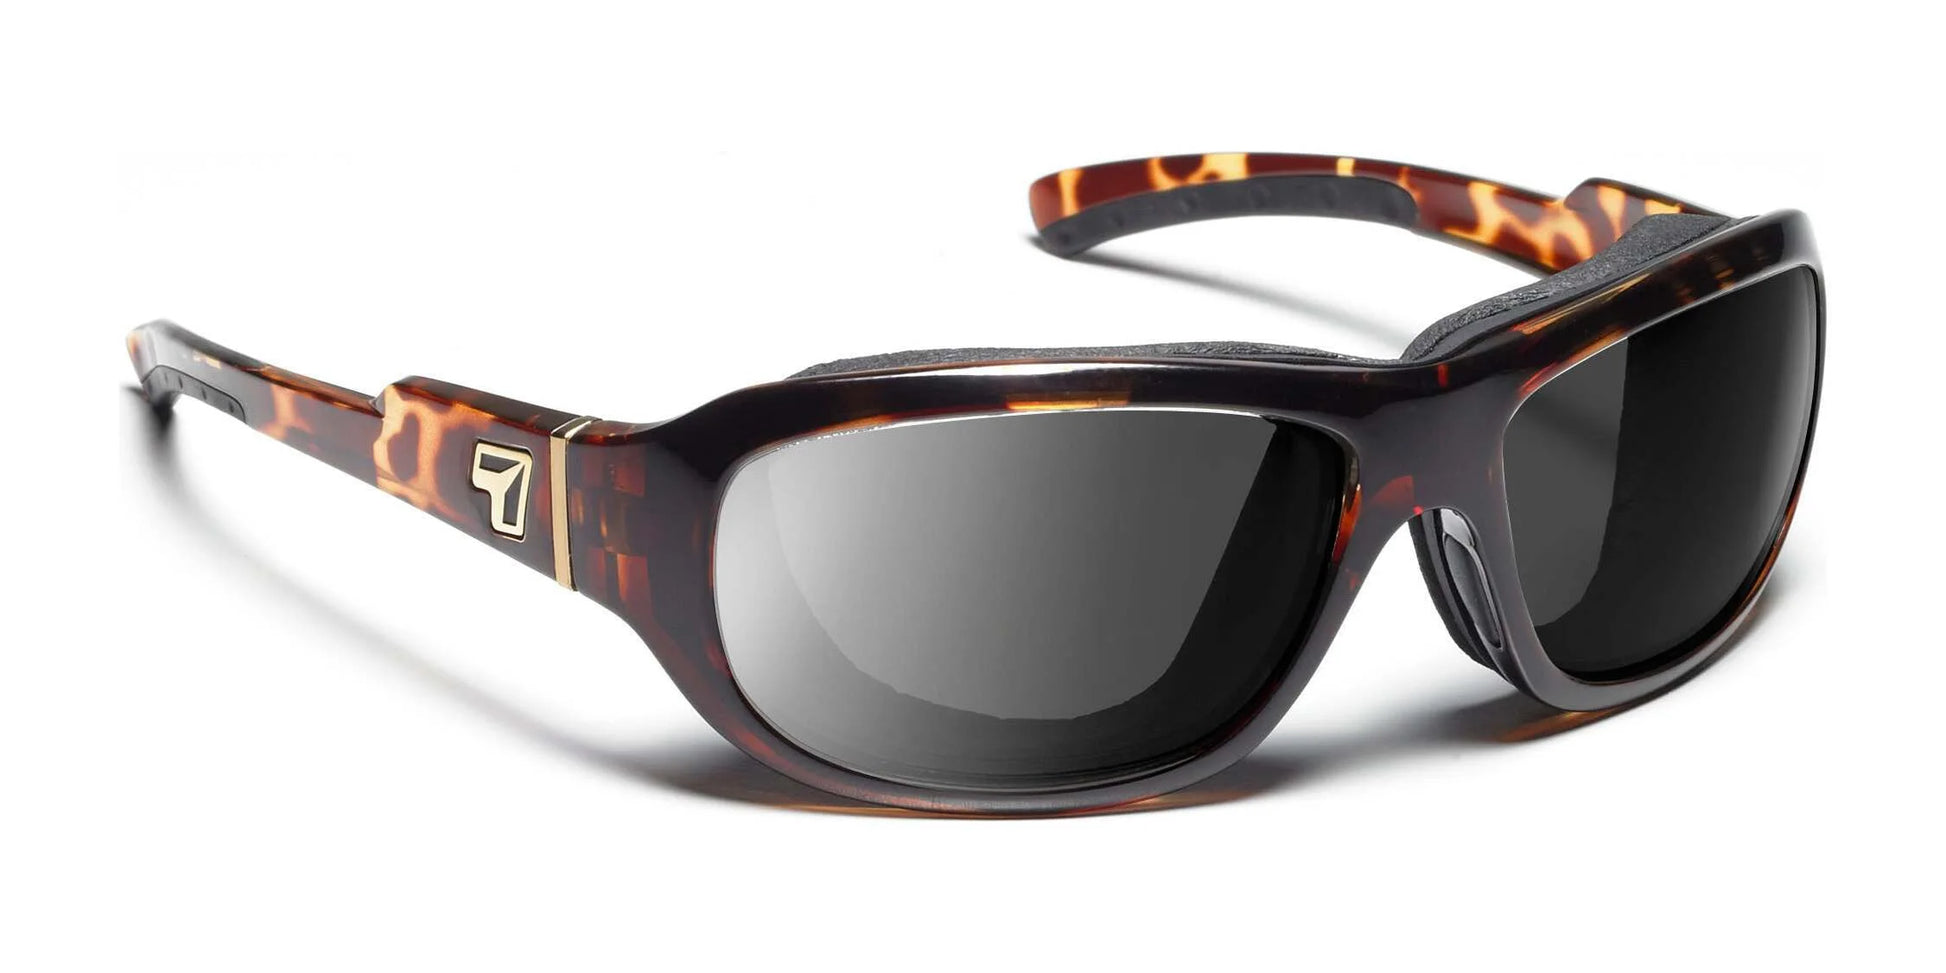 7eye Buran Sunglasses Light Tortoise / Polarized Copper